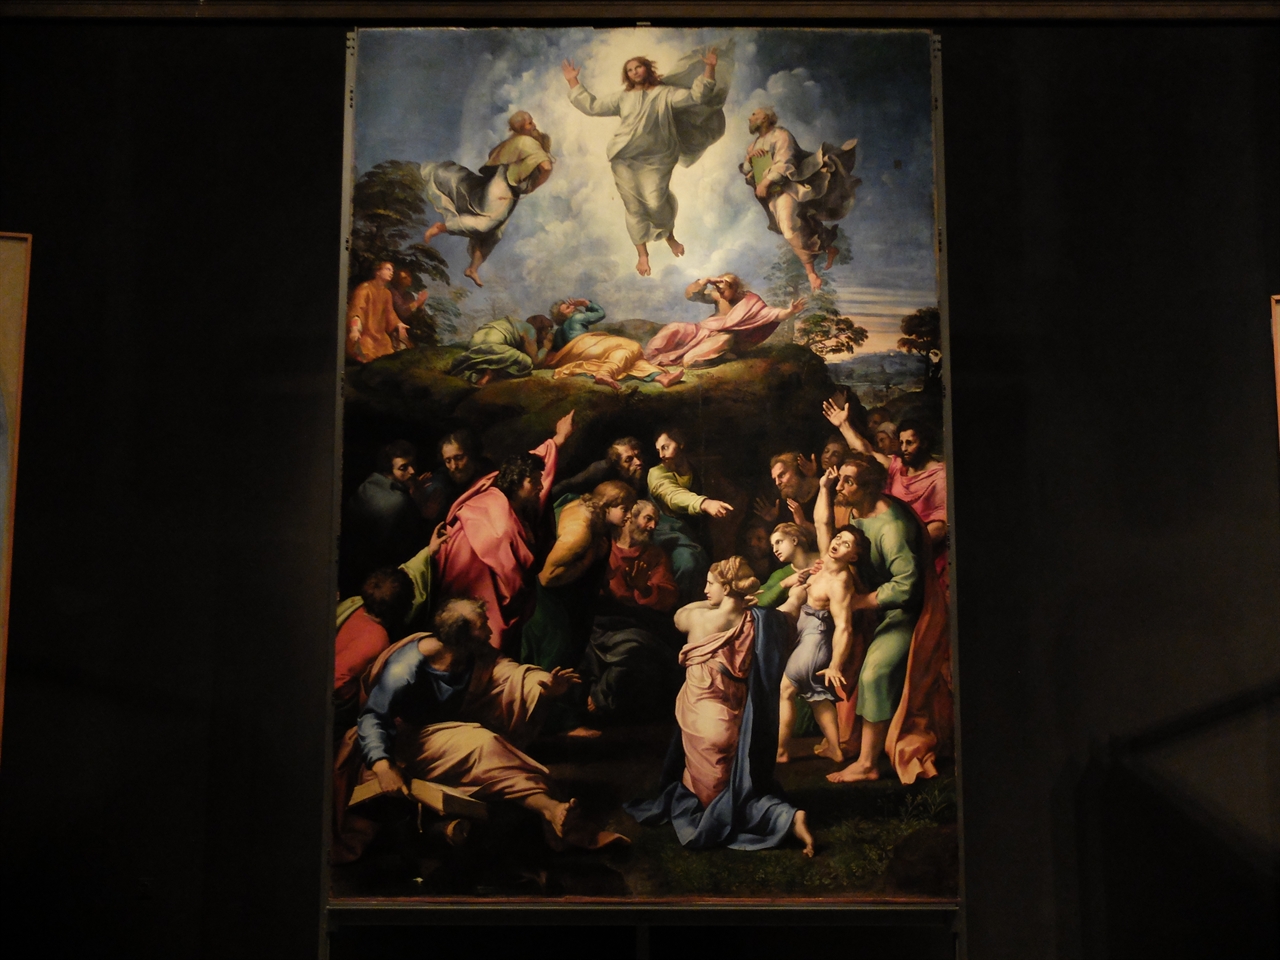 라파엘로, <그리스도의 변모>, 바티칸 박물관 회화관. 제자들과 타보르산에 오른 예수가 변모하는 순간을 묘사한 이 작품은 천상과 지상의 대조를 보여주고 있습니다. 